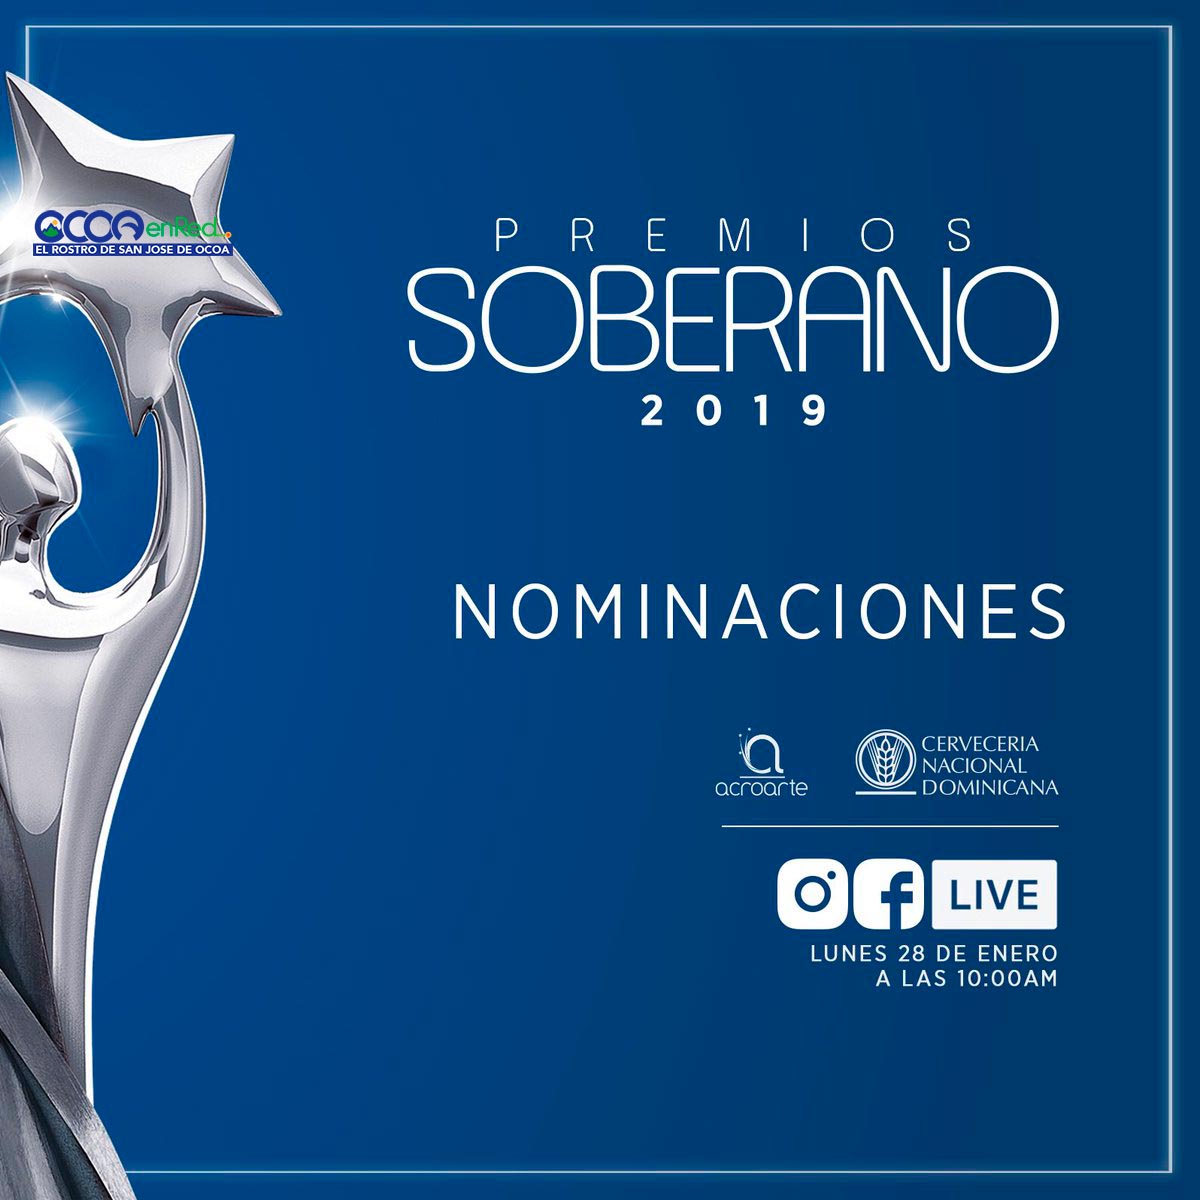 Conozca los nominados a Premios Soberano 2019 Ocoaenred